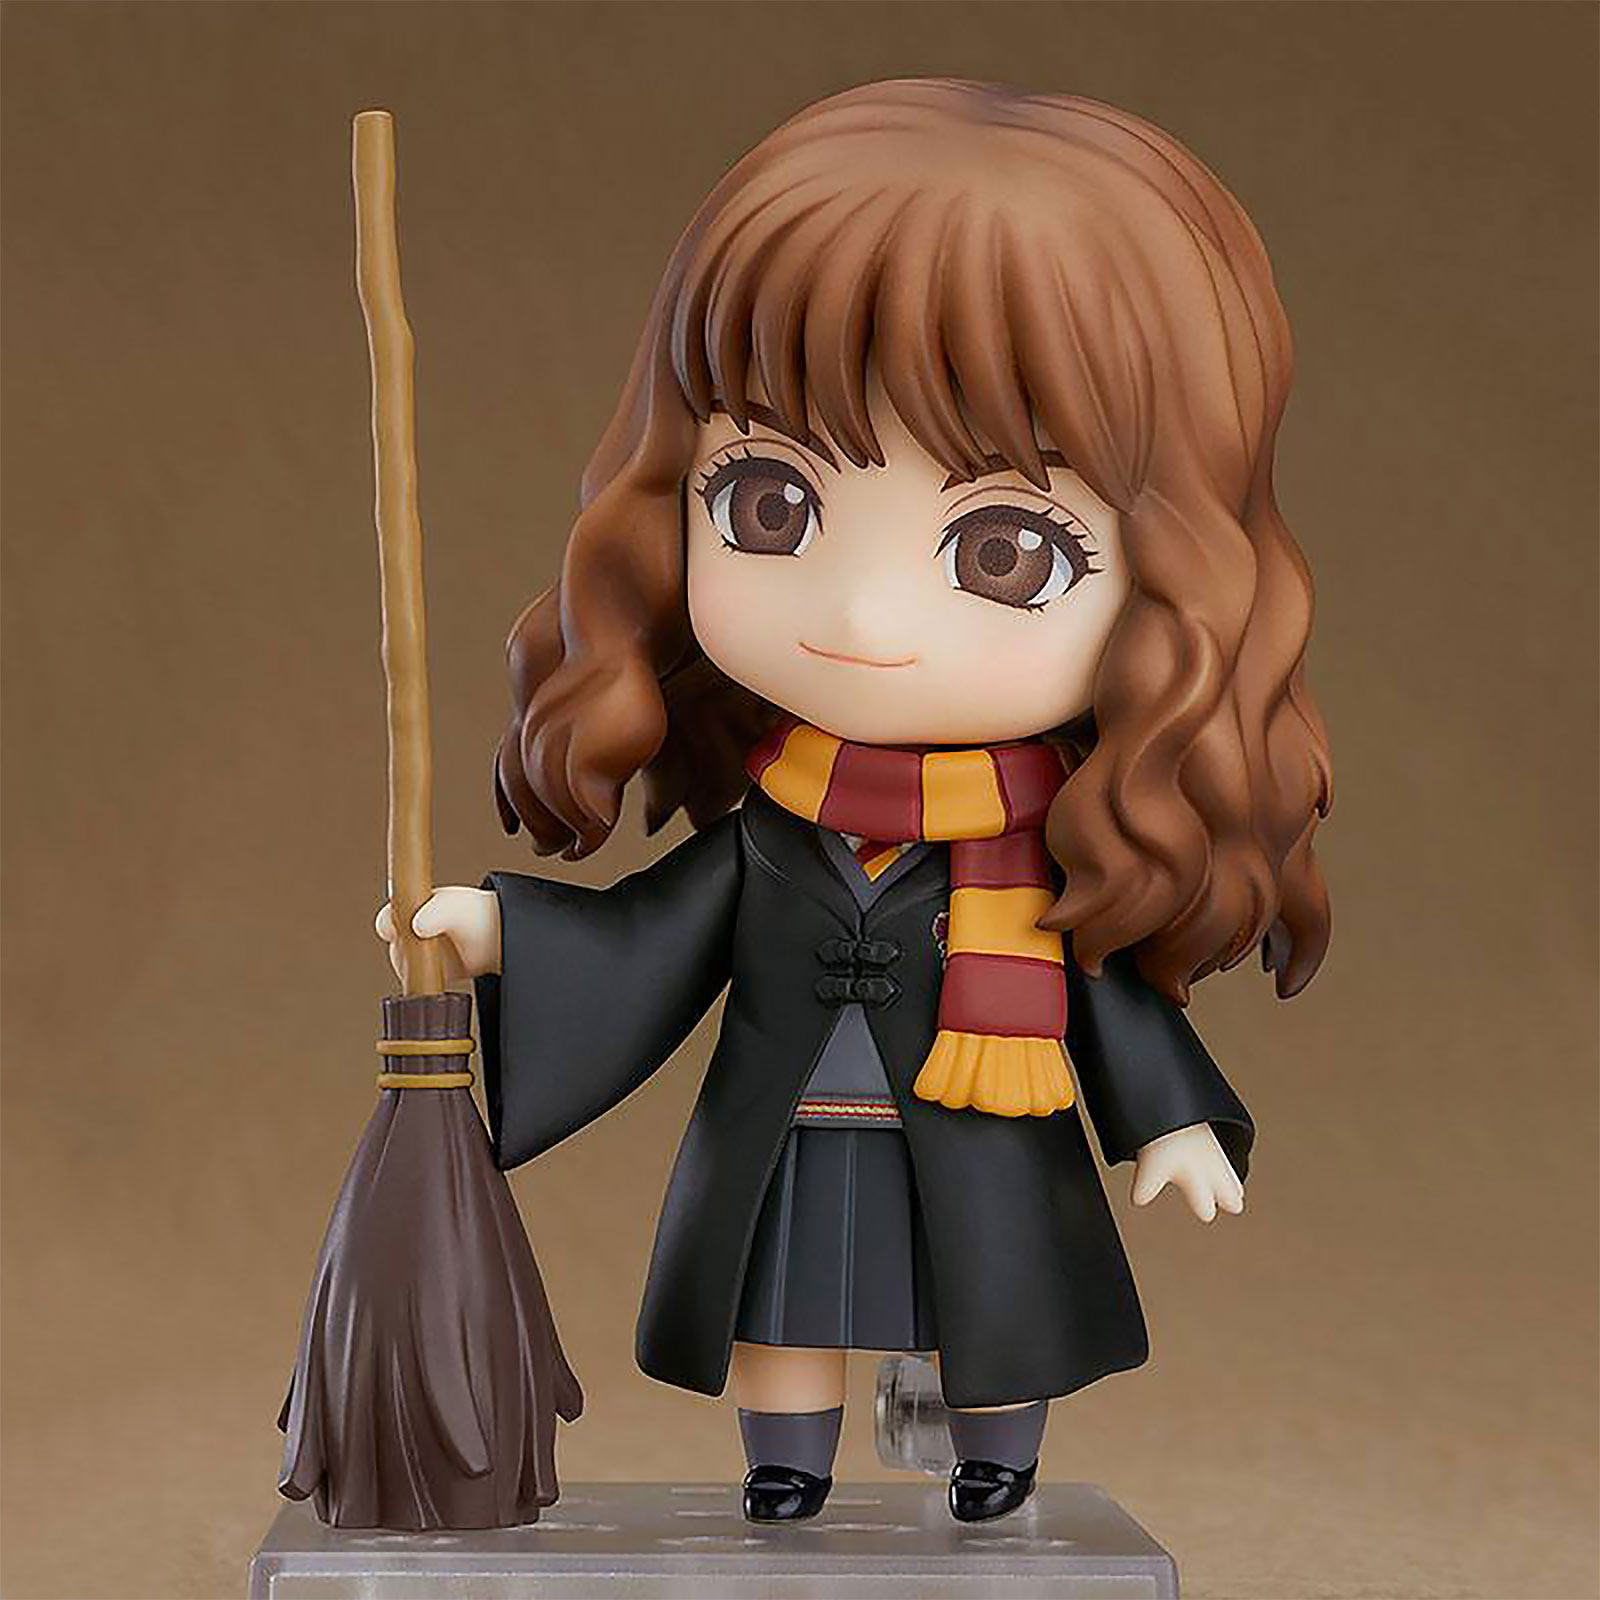 Harry Potter - Hermione Granger Nendoroid Action Figure